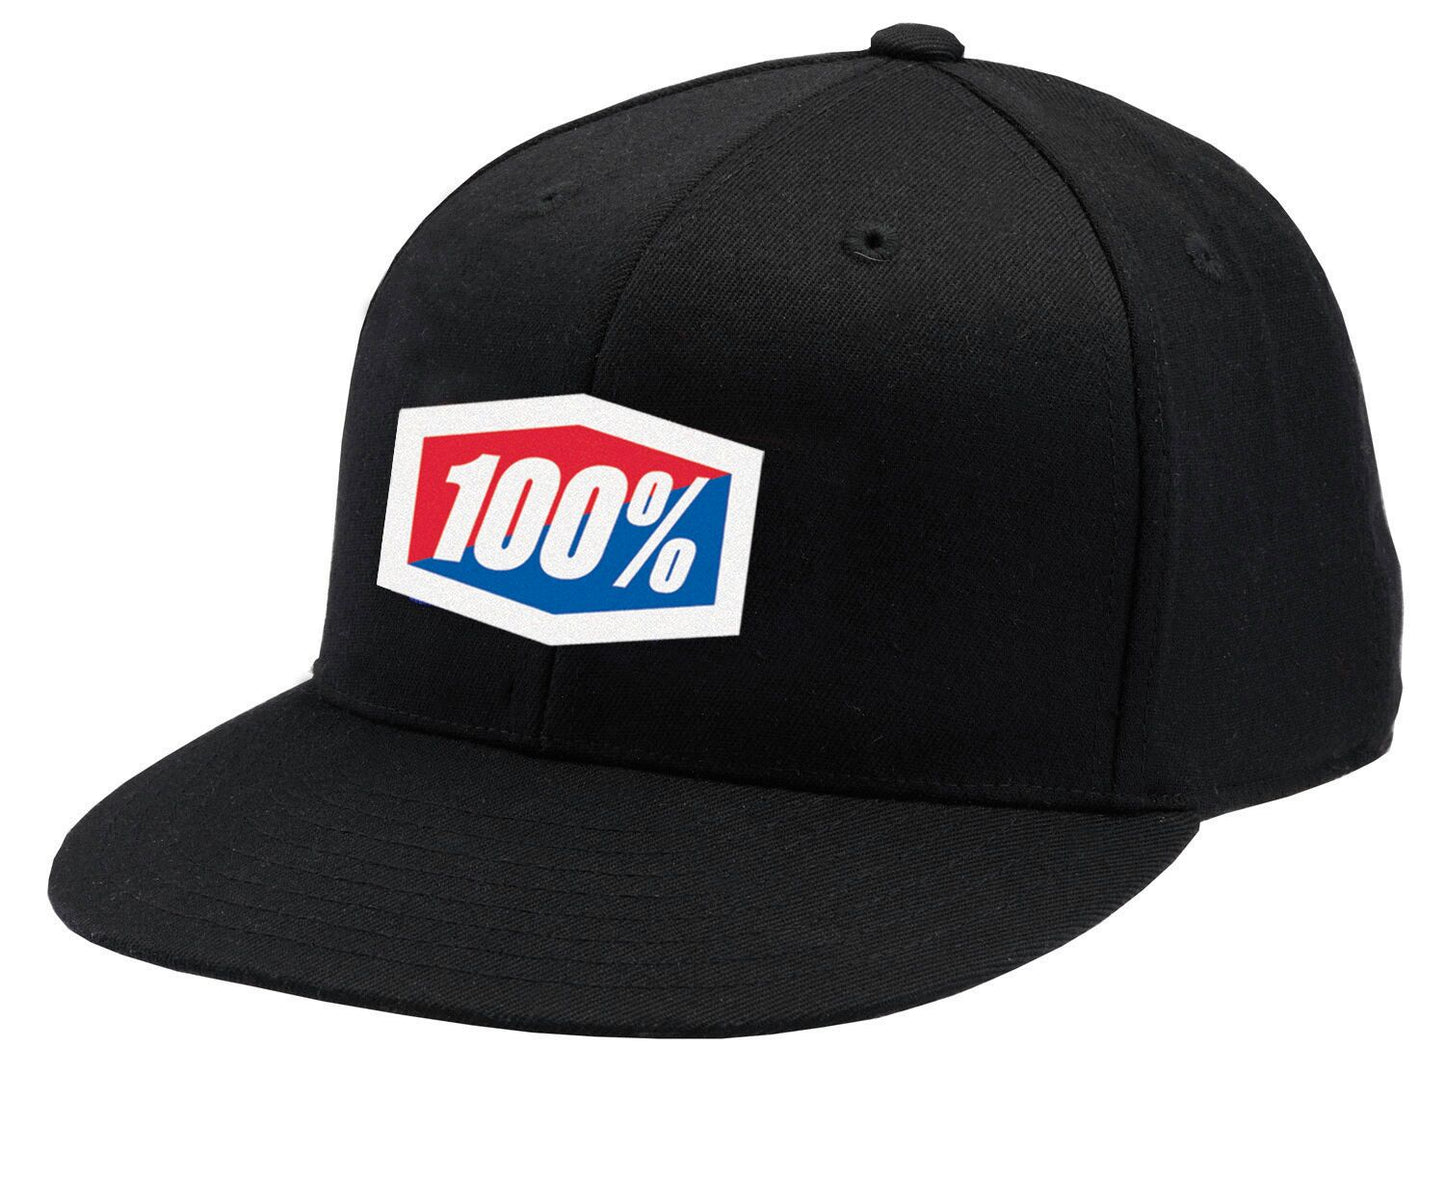 100% Official J-Fit Flexfit Hat Black